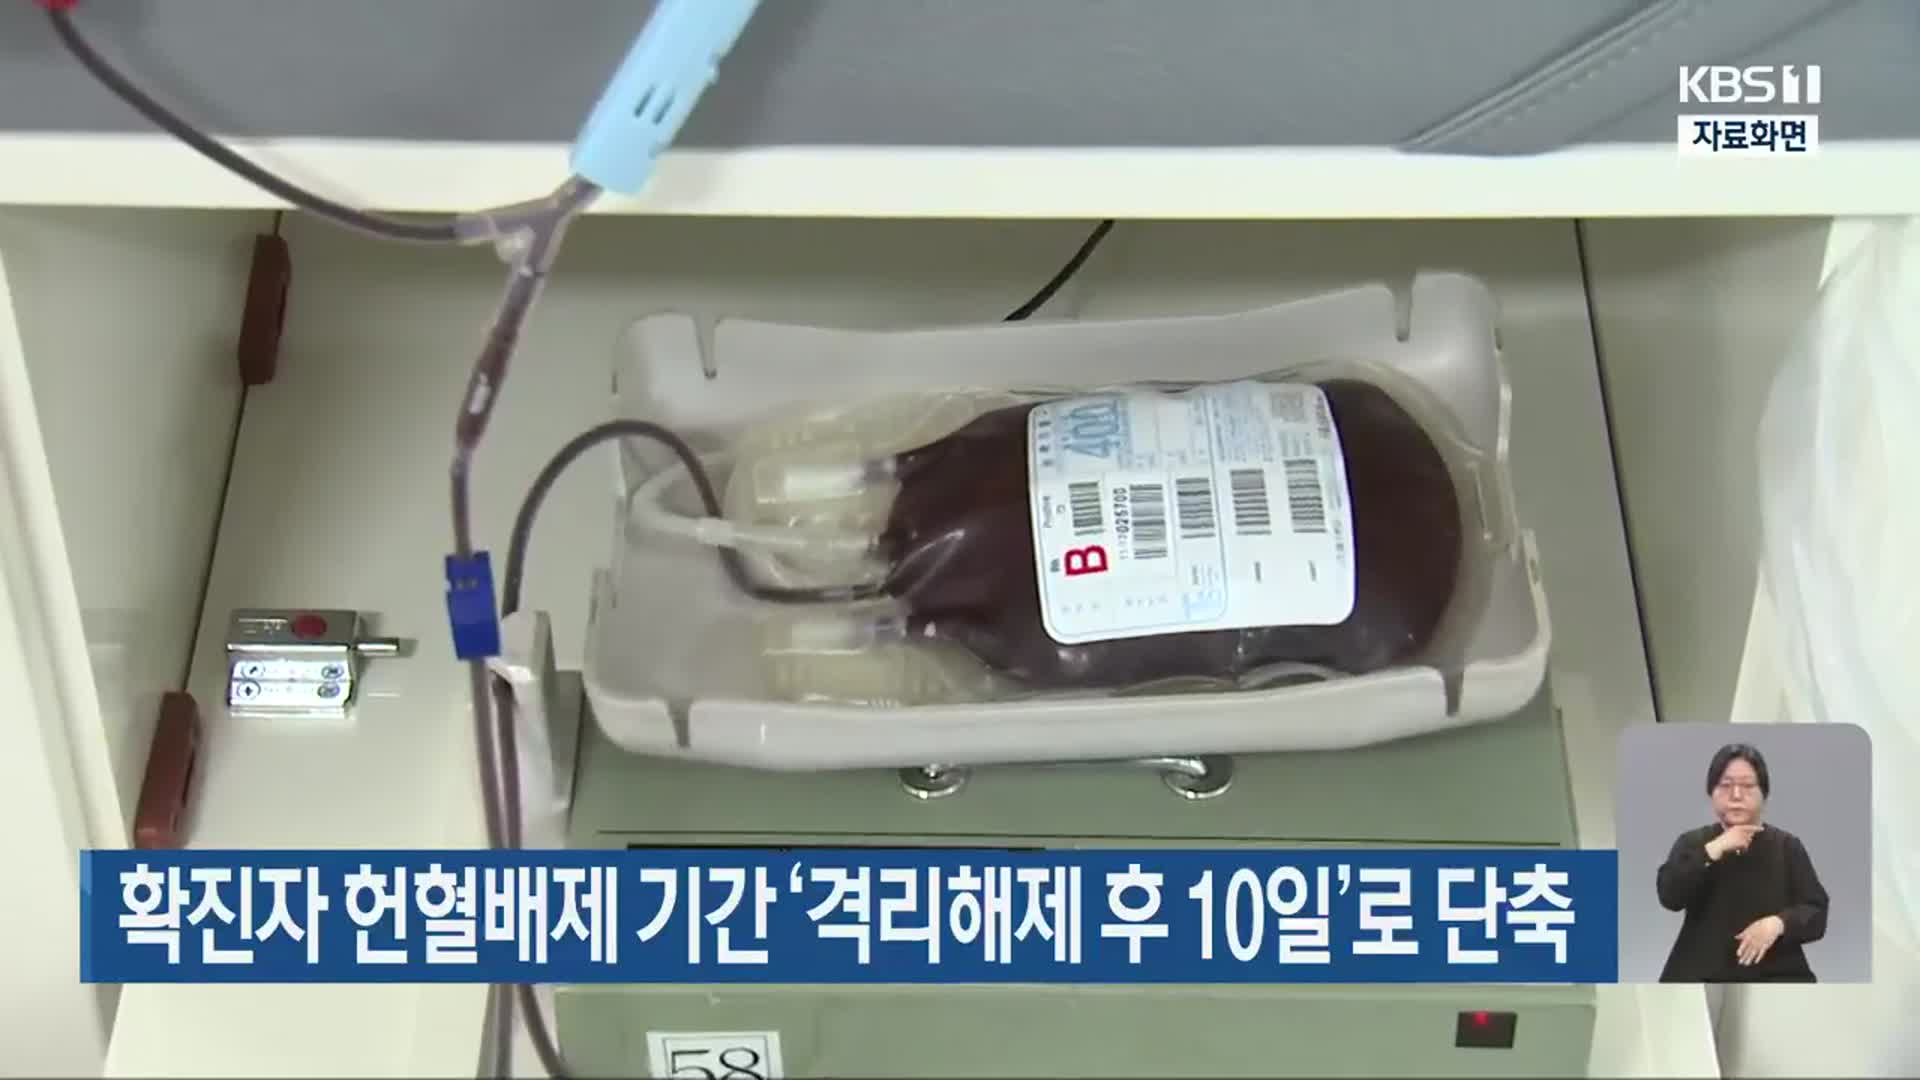 확진자 헌혈배제 기간 ‘격리해제 후 10일’로 단축